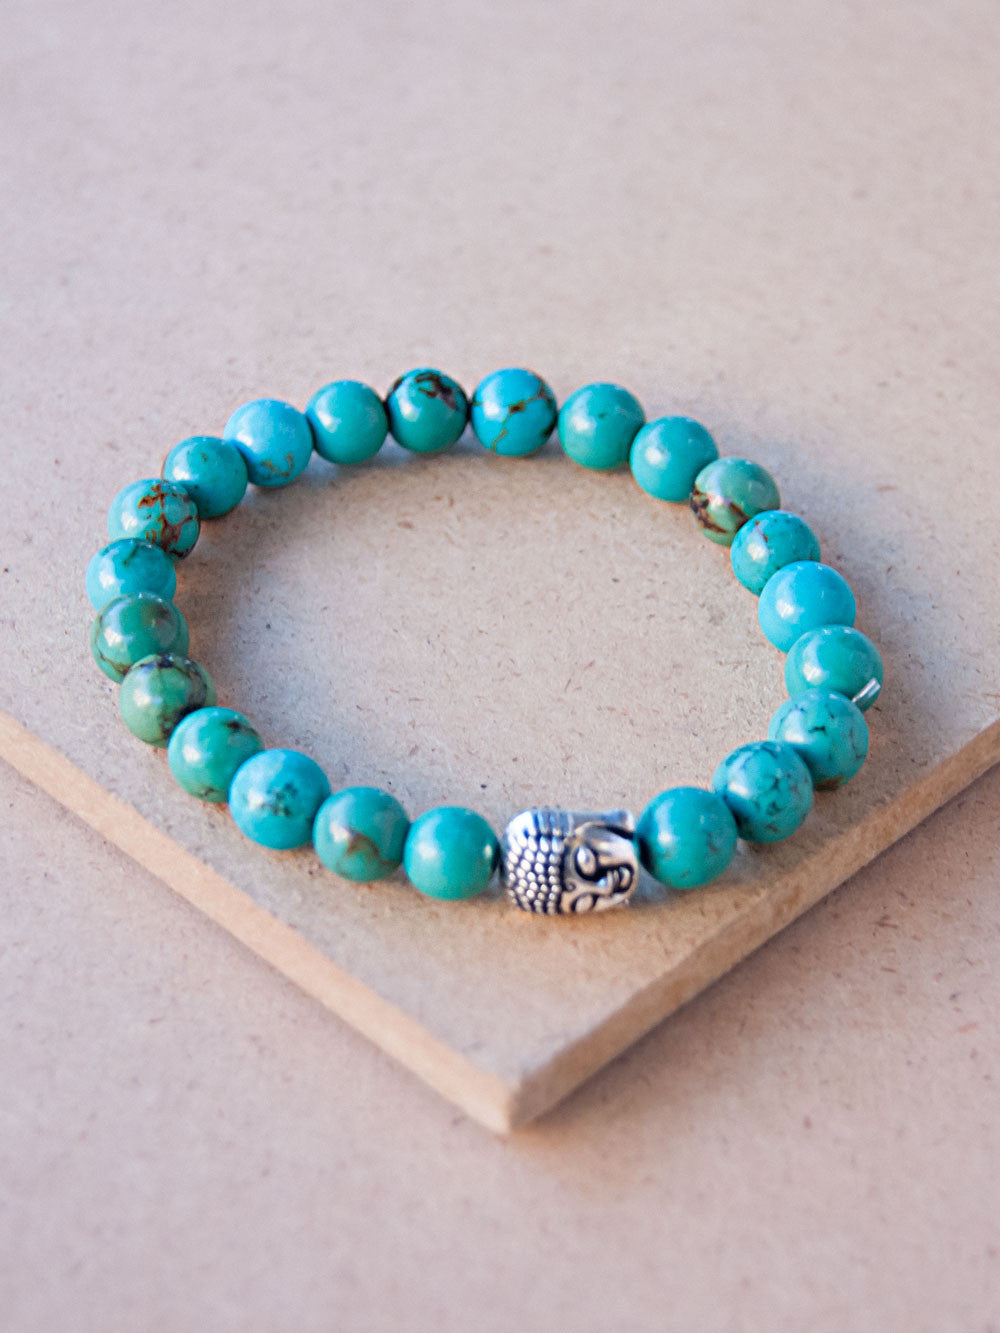 Mala Bracelet - Turquoise Buddha Mala Bracelet